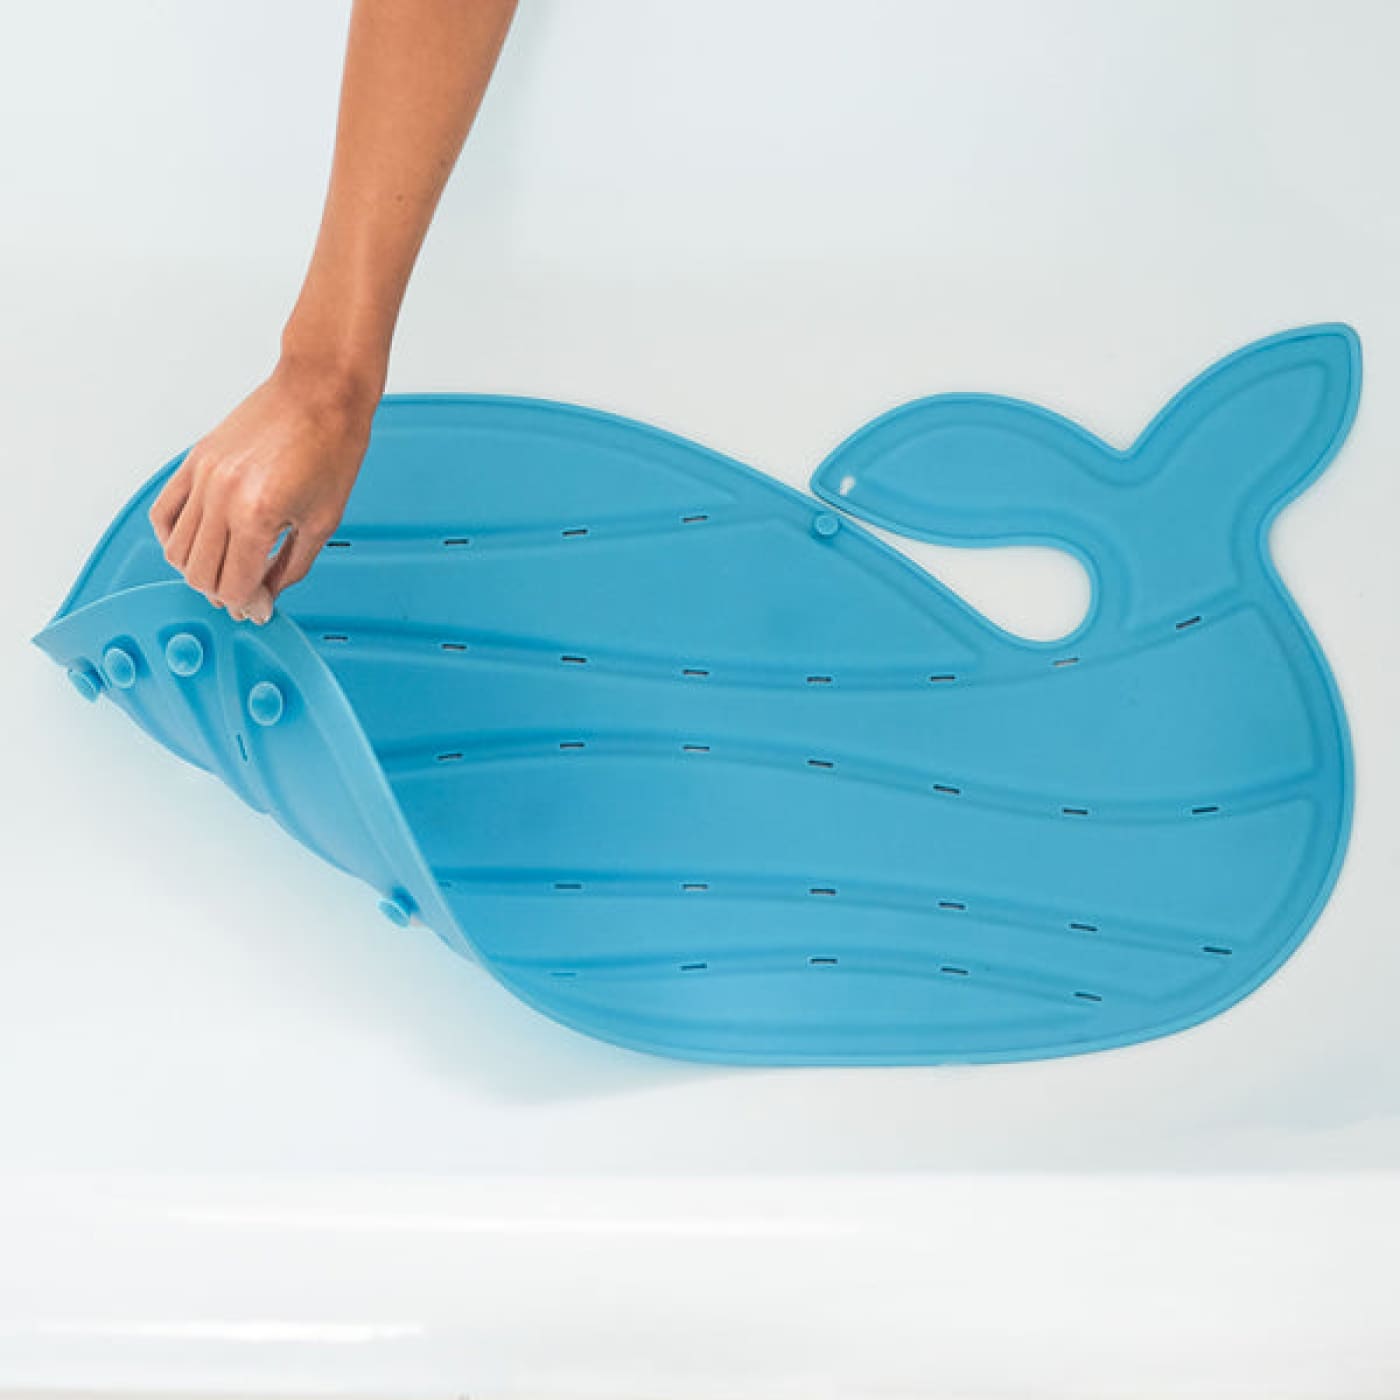 Skip Hop Moby Bath Mat - Blue - BATHTIME & CHANGING - BATH TOYS/AIDS